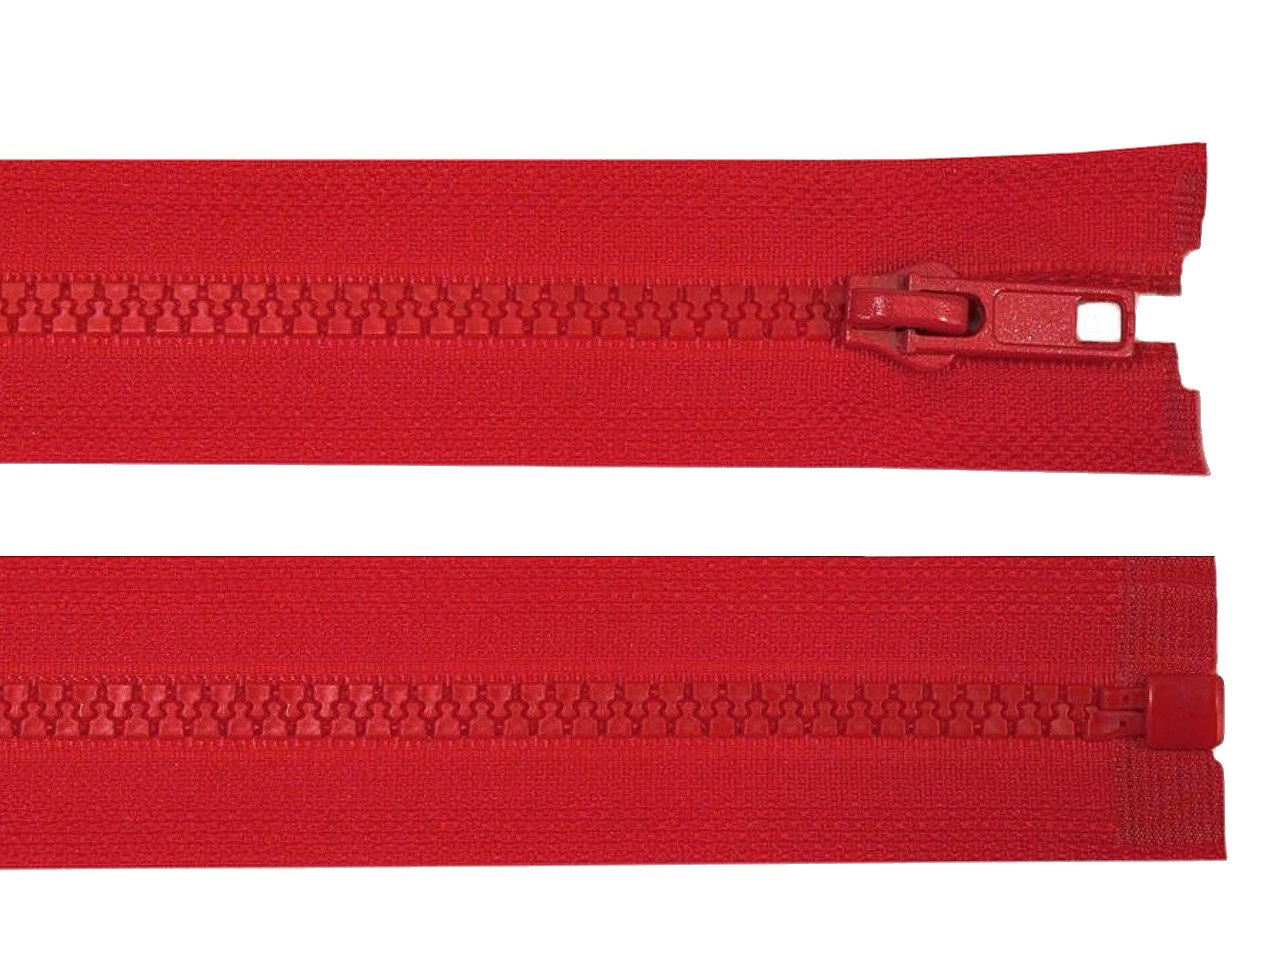 Kostěný zip No 5 délka 85 cm bundový, barva 148 červená